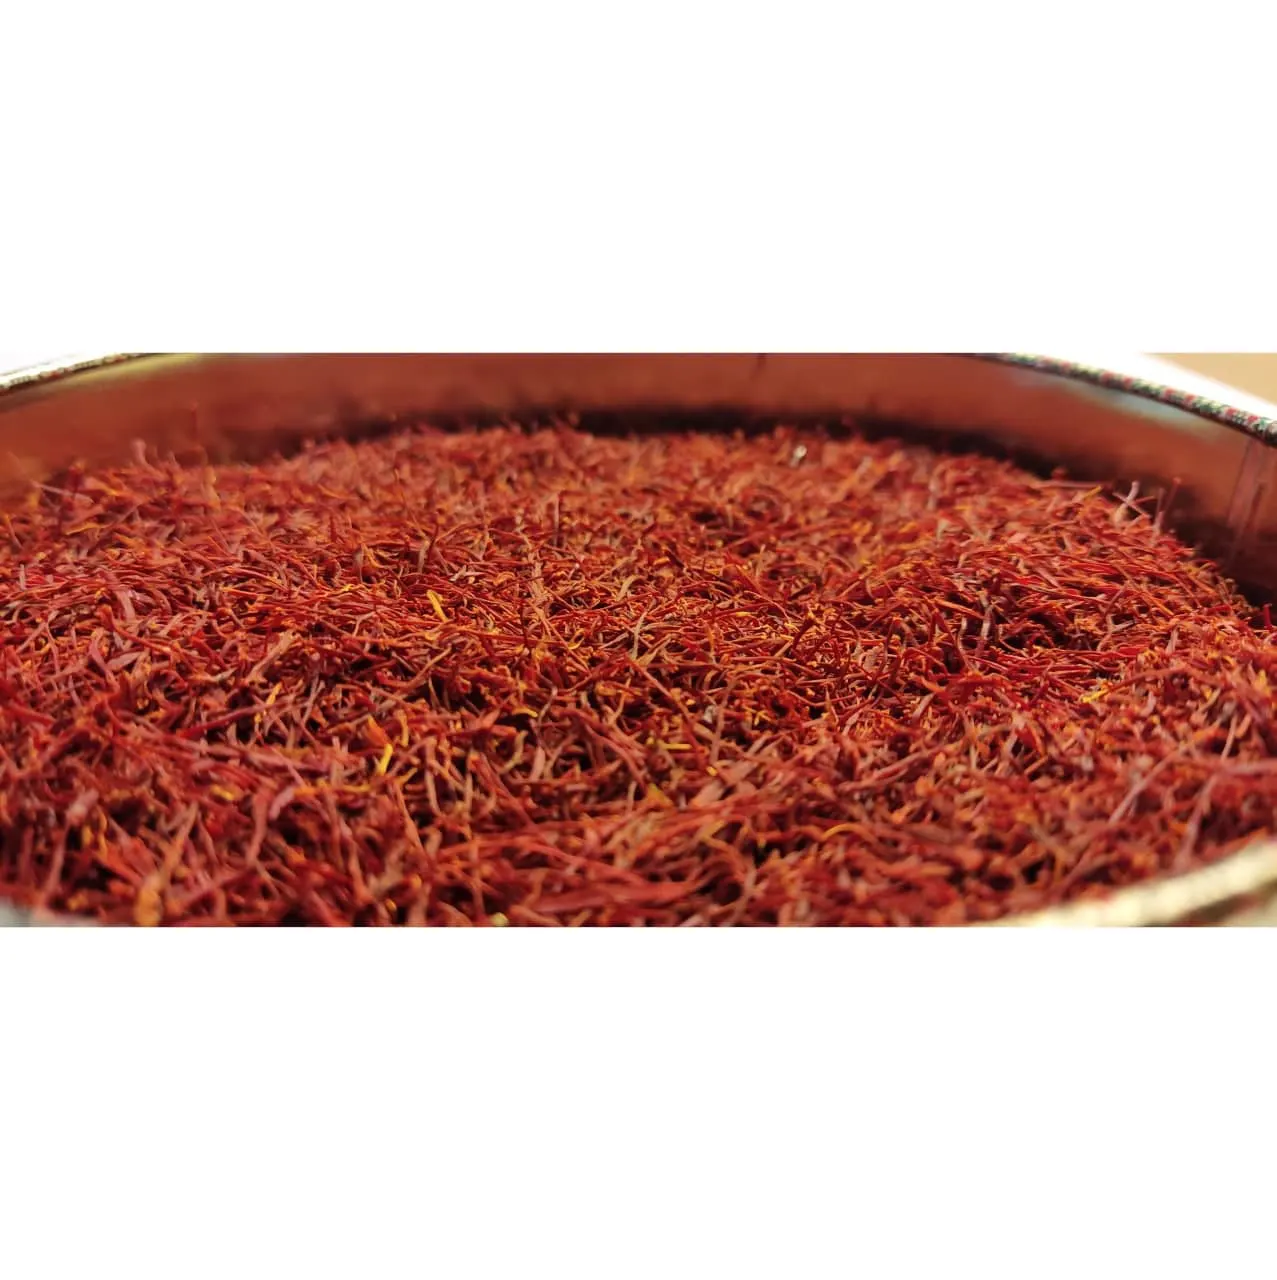 saffron price per kg in Qatar - Ana Qayen saffron